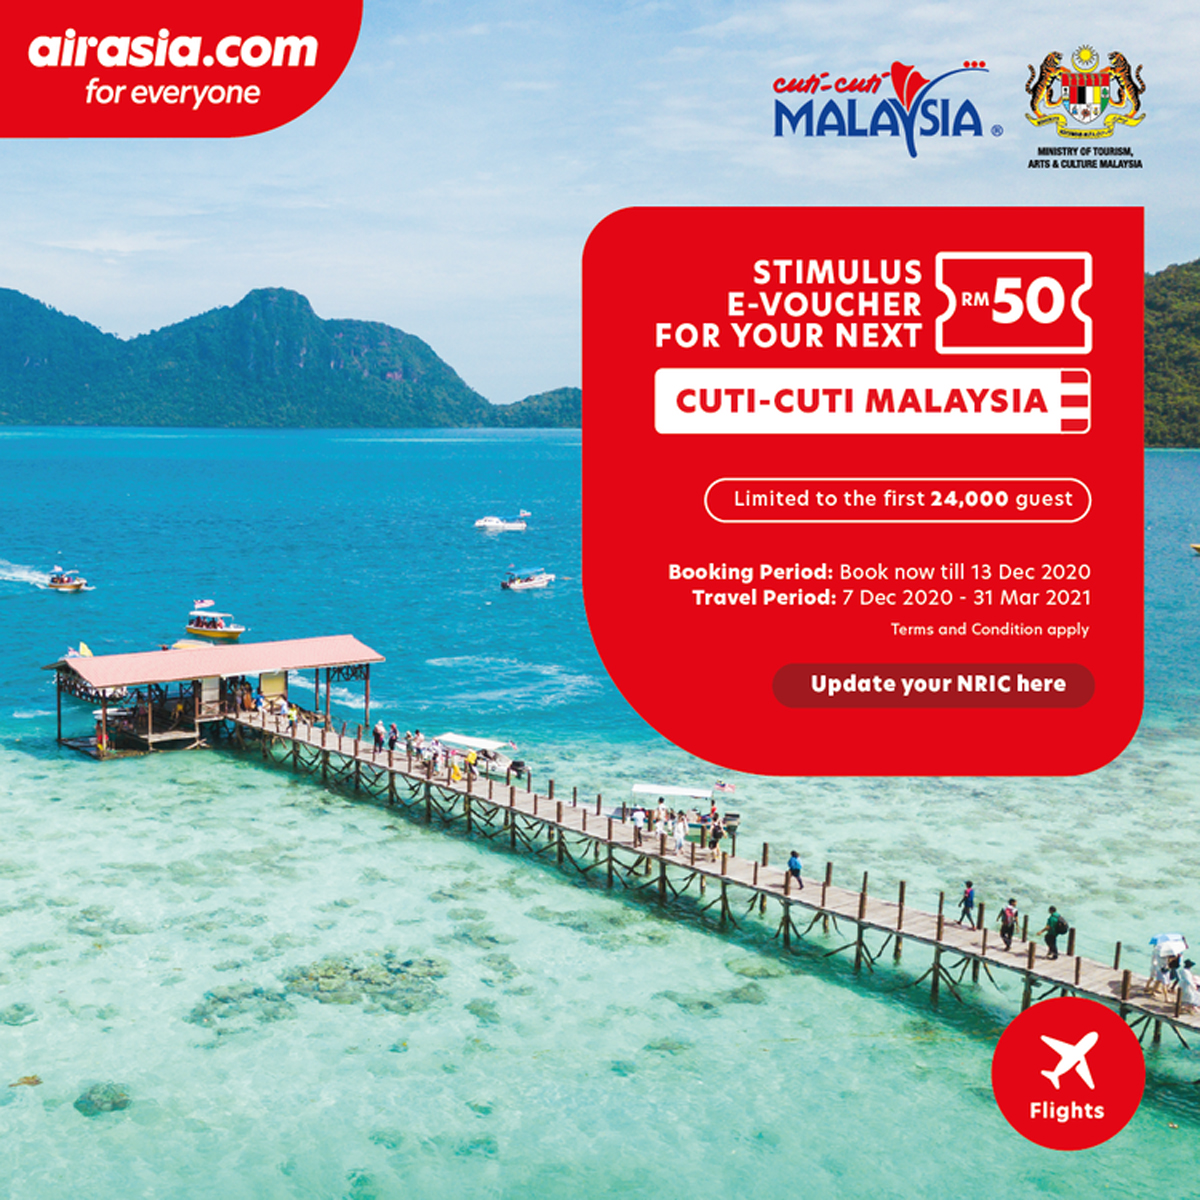 AirAsia Cuti-Cuti Malaysia e-voucher kan nu worden ingewisseld via de website